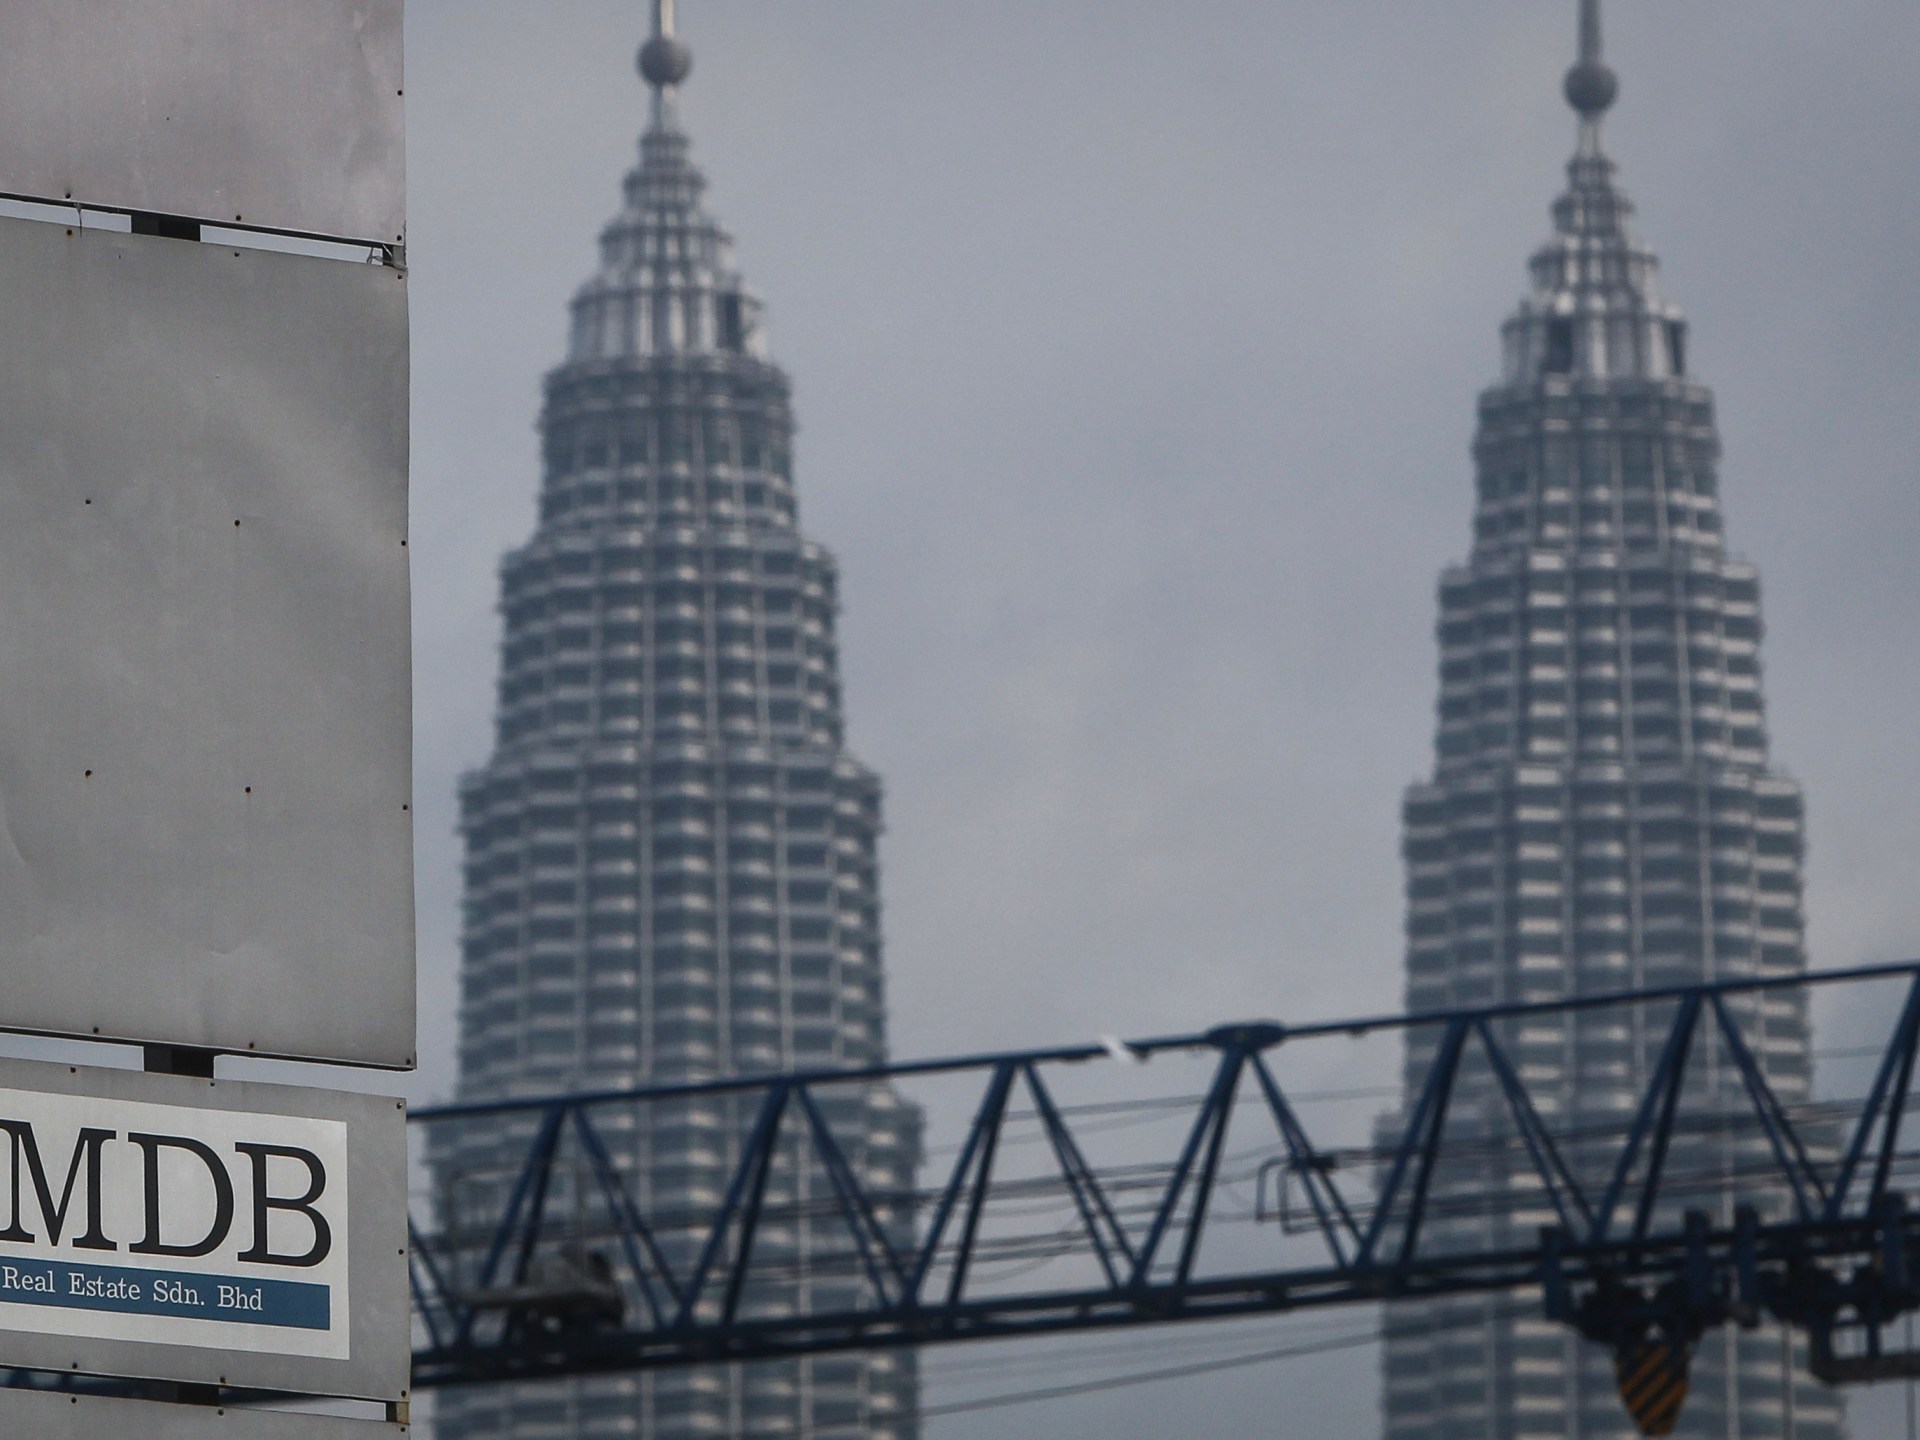 Jho Low, suspeito e cúmplice do 1MDB, morre após semanas de interrogatório |  notícias de corrupção